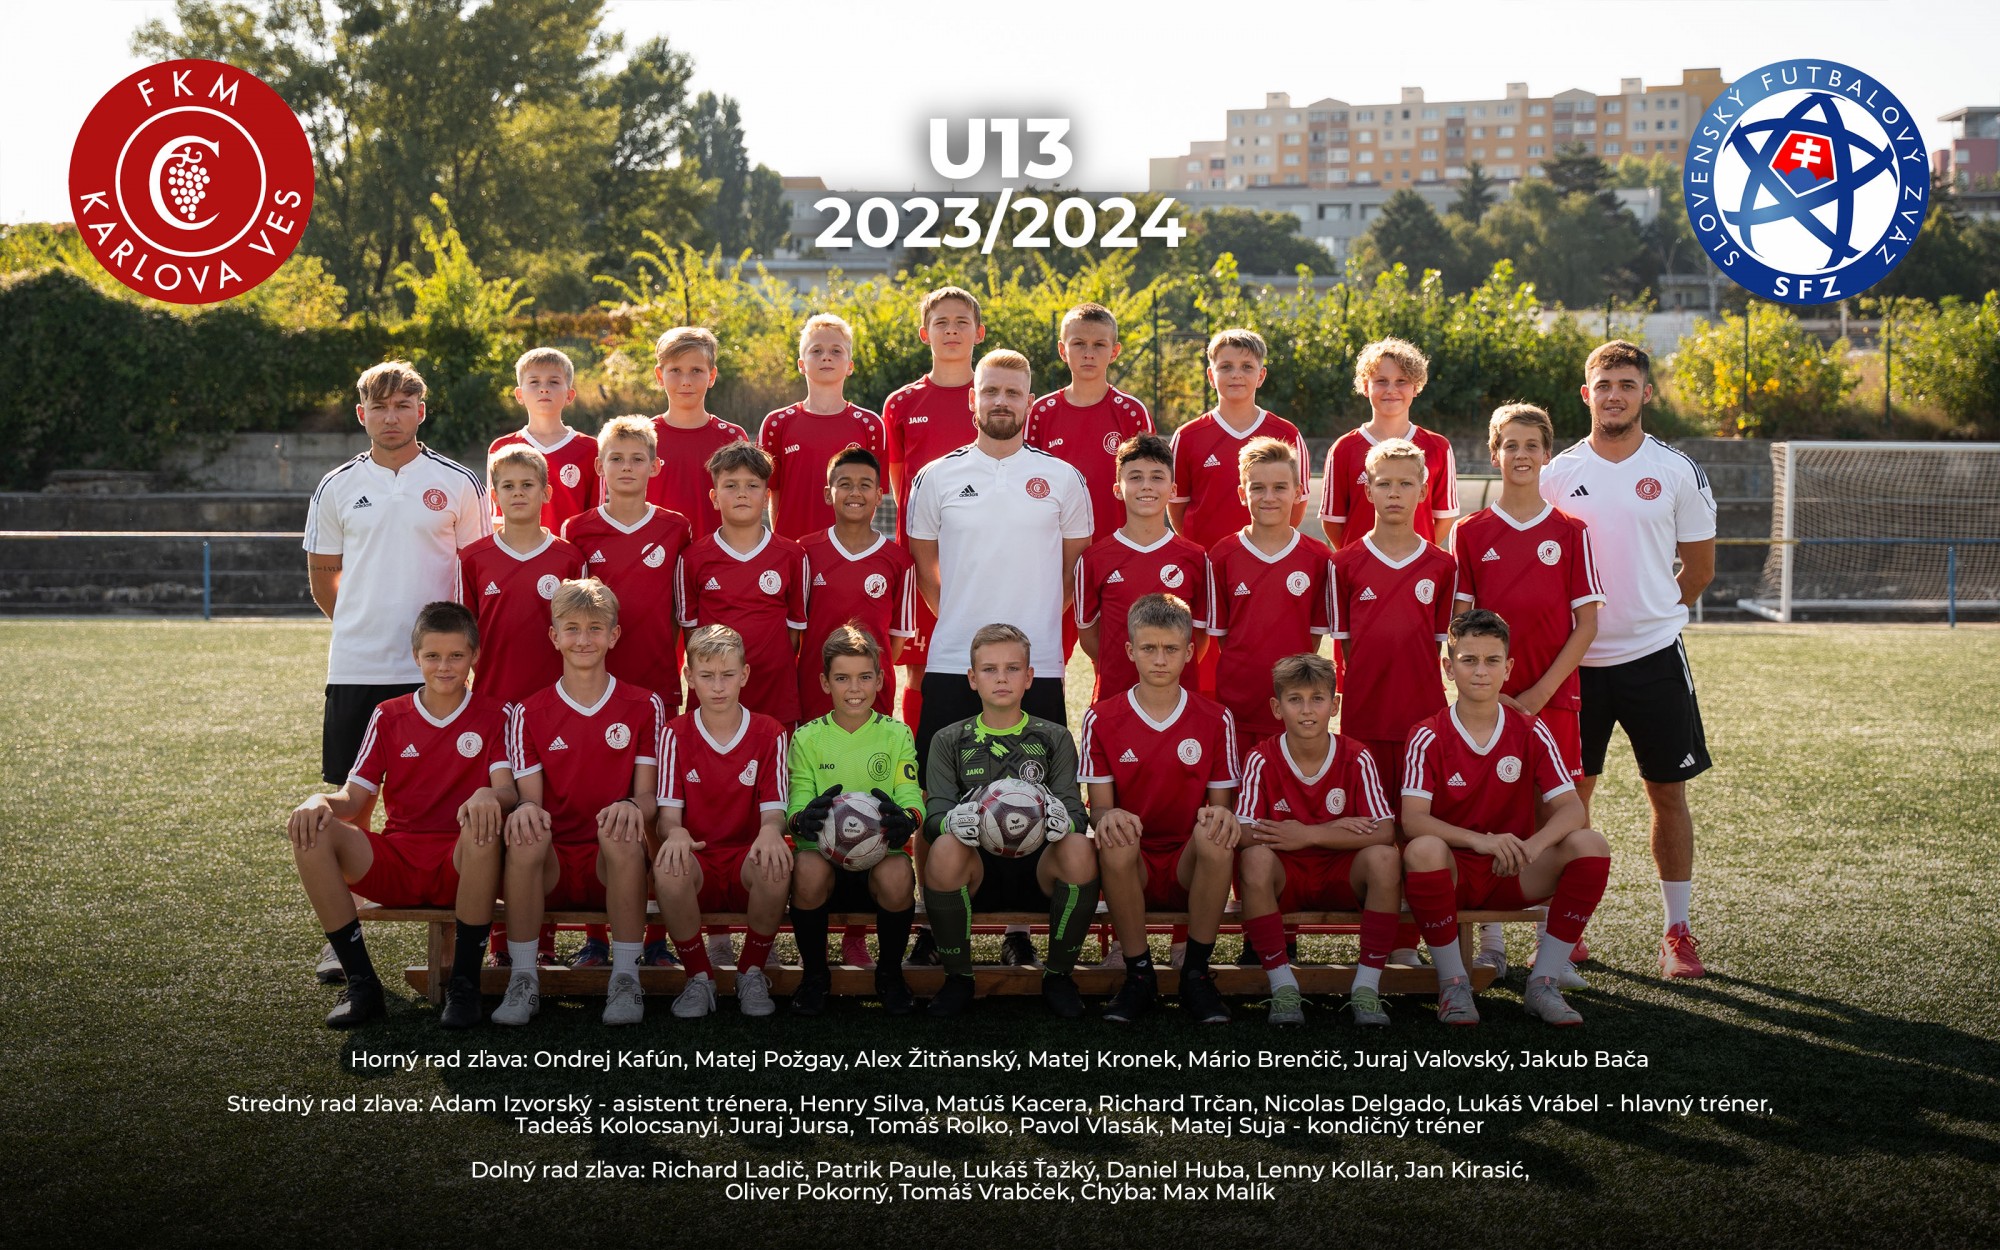 Mladší žiaci U13 (2011) súťažný ročník 2023/2024